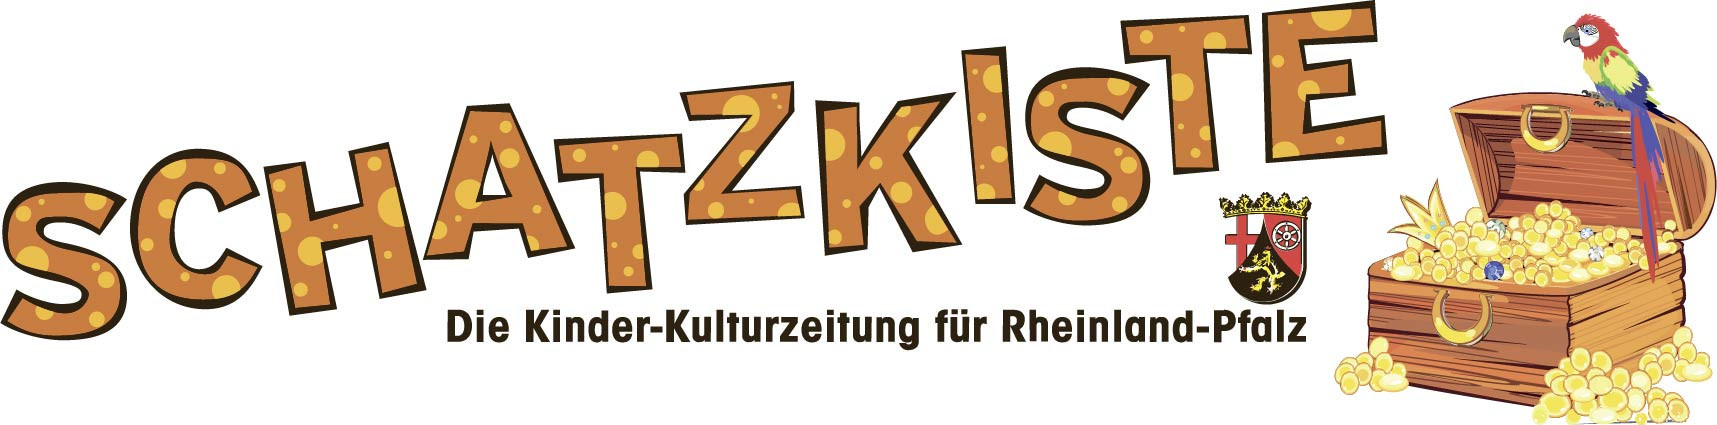 Schriftzug: Schatzkiste. Die Kinder-Kultur-Zeitung für Rheinland-Pfalz. Abgebildet ist das Wappen von Rheinland-Pfalz. Rechts davon ist eine mit Münzen gefüllte Schatzkiste. Auf der Kiste sitzt ein Papagei.